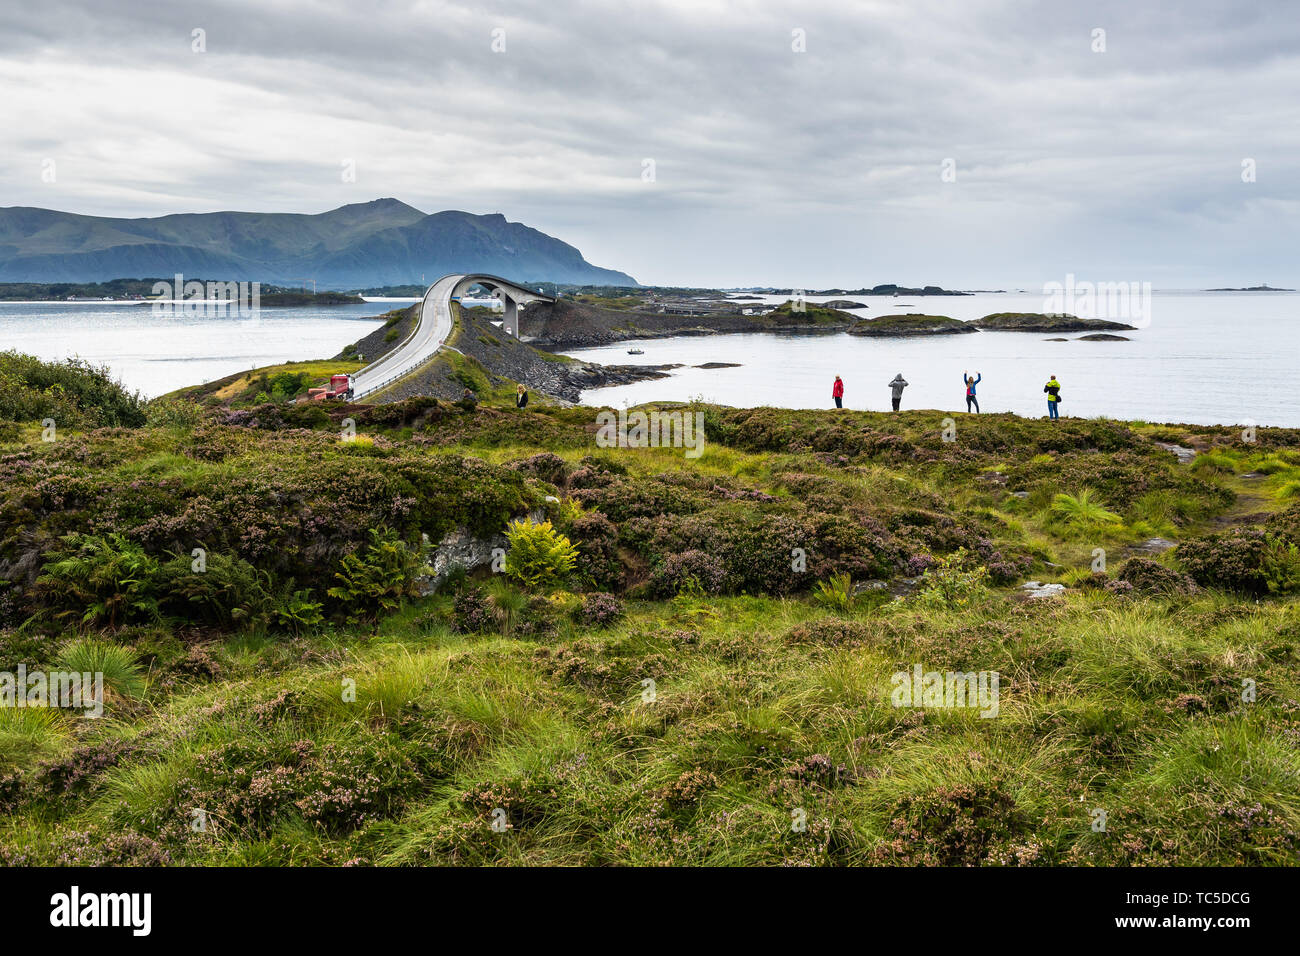 Les touristes de prendre des photos en face de la route de l'Atlantique (Atlanterhavsvegen), l'une des routes les plus emblématiques en Norvège Banque D'Images